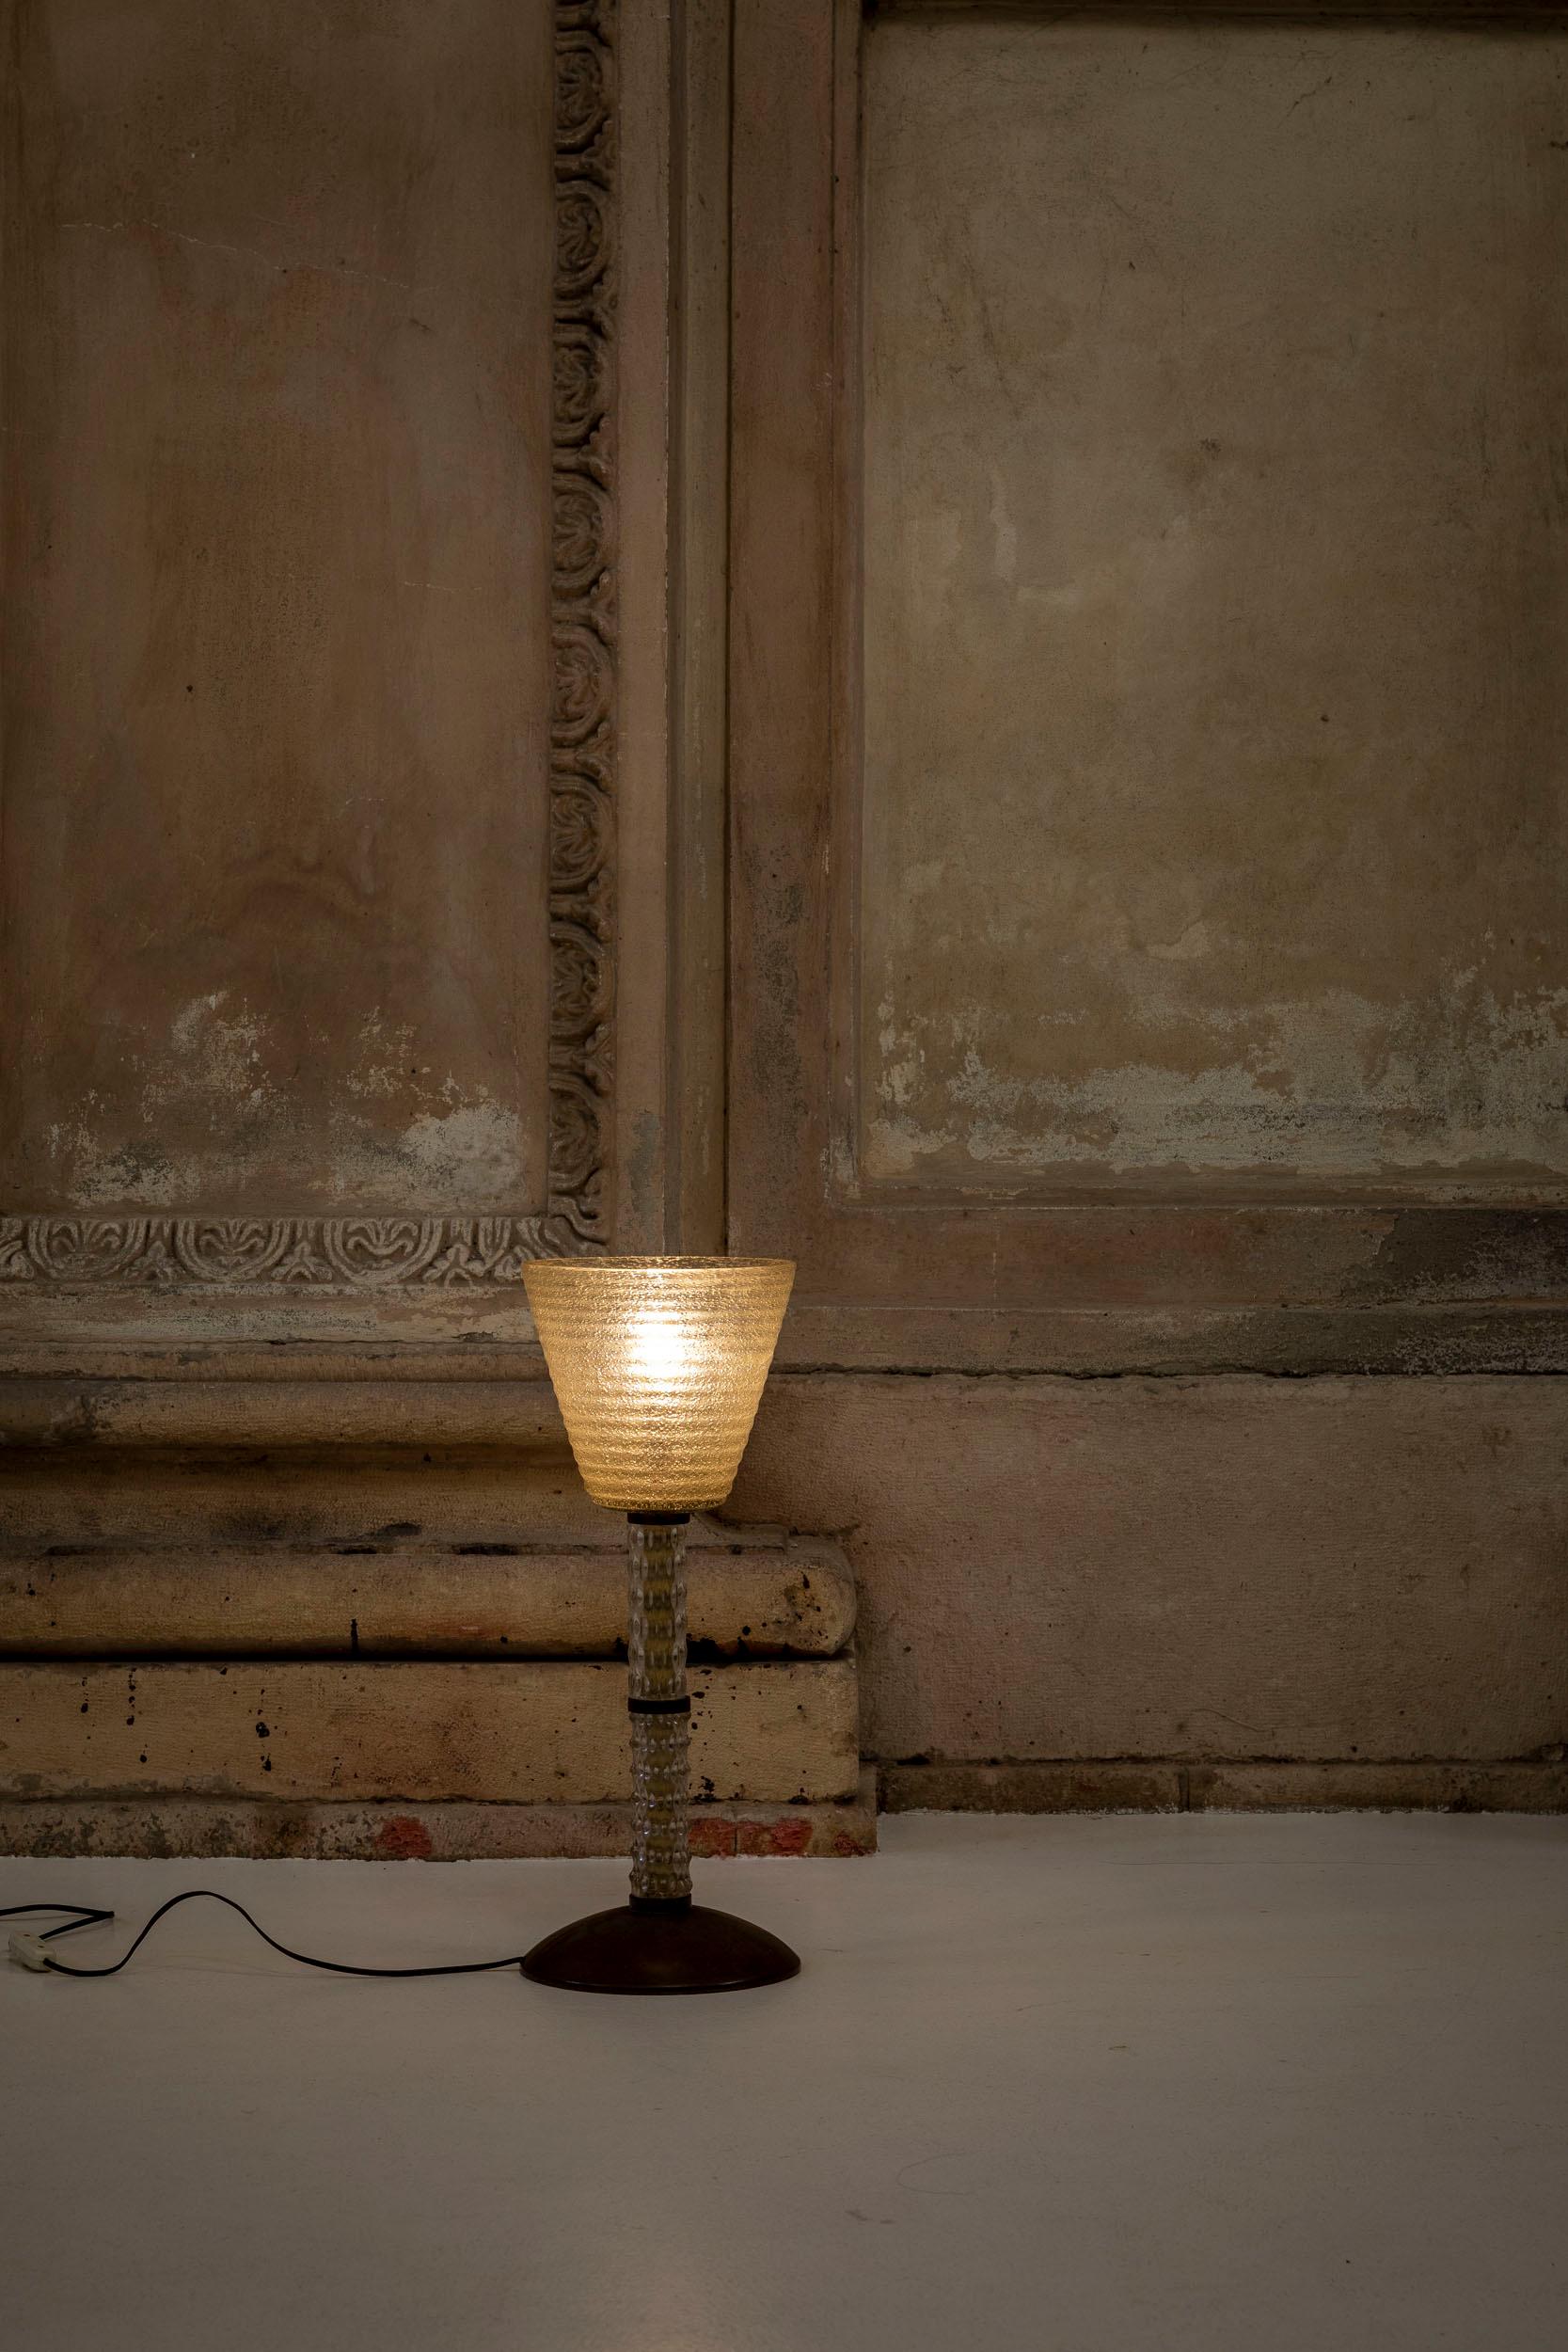 Lampe de table en verre de Murano attribuée à Seguso, Italie, 1940 environ.
Belle lampe de table composée d'un abat-jour conique en verre finement décoré, dans le ton du vert clair. La lampe présente une base circulaire en laiton et une tige en